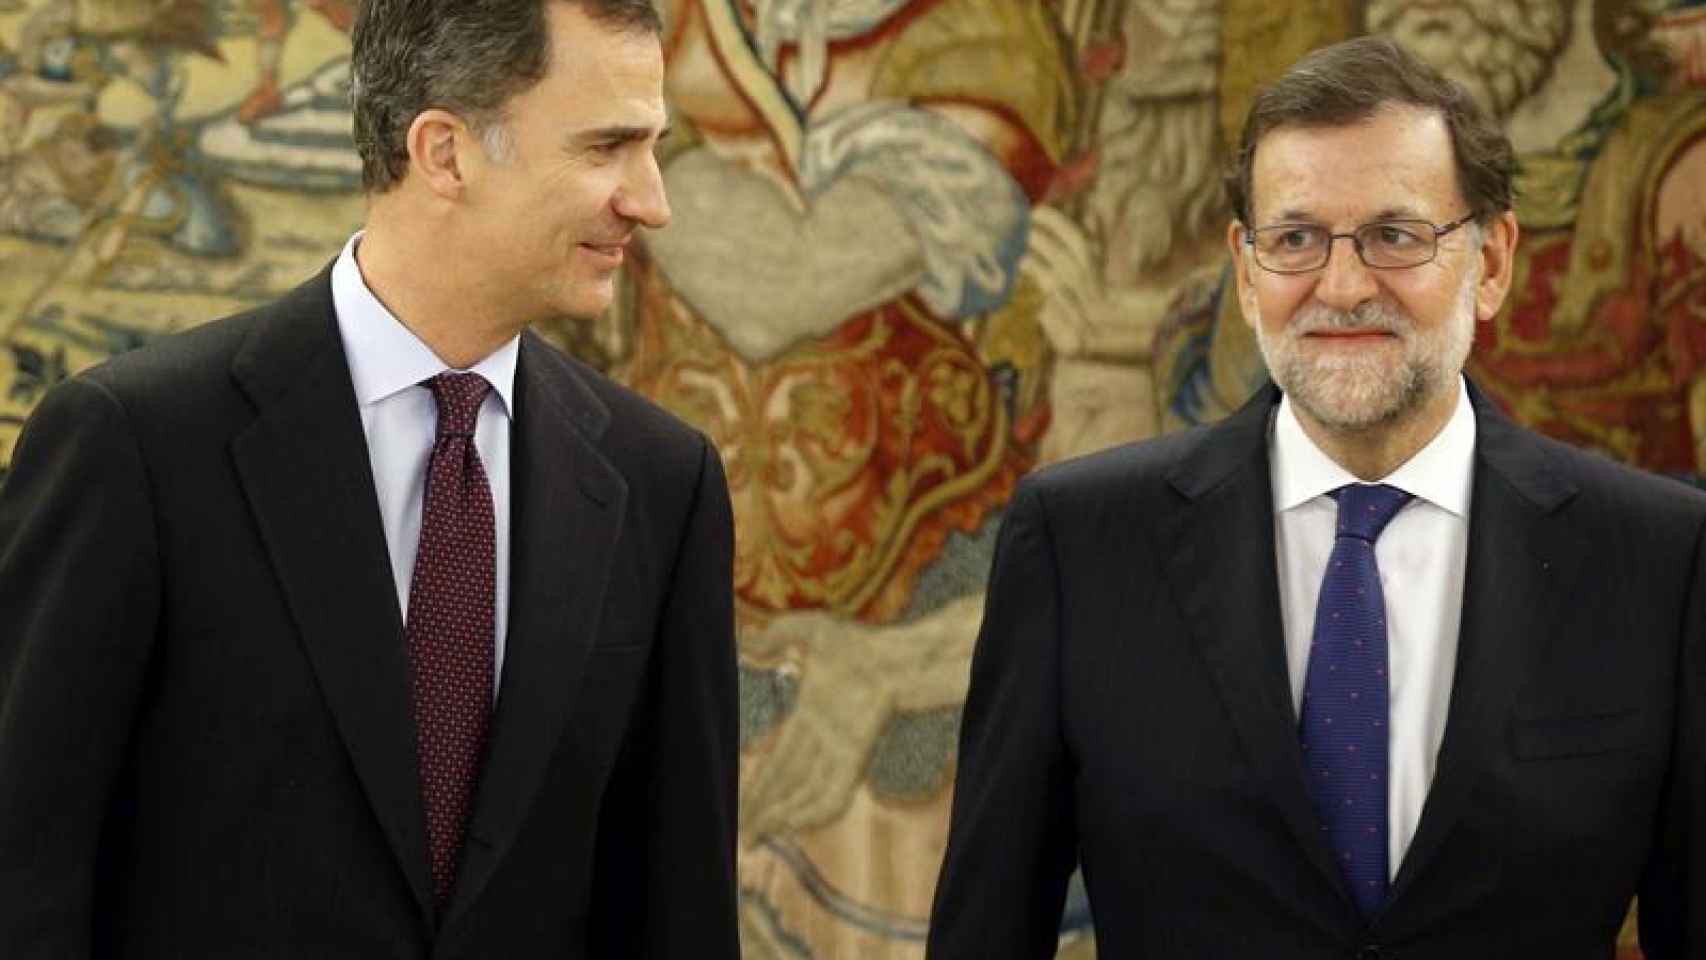 La reunión de Rajoy con el Rey se ha prolongado 45 minutos